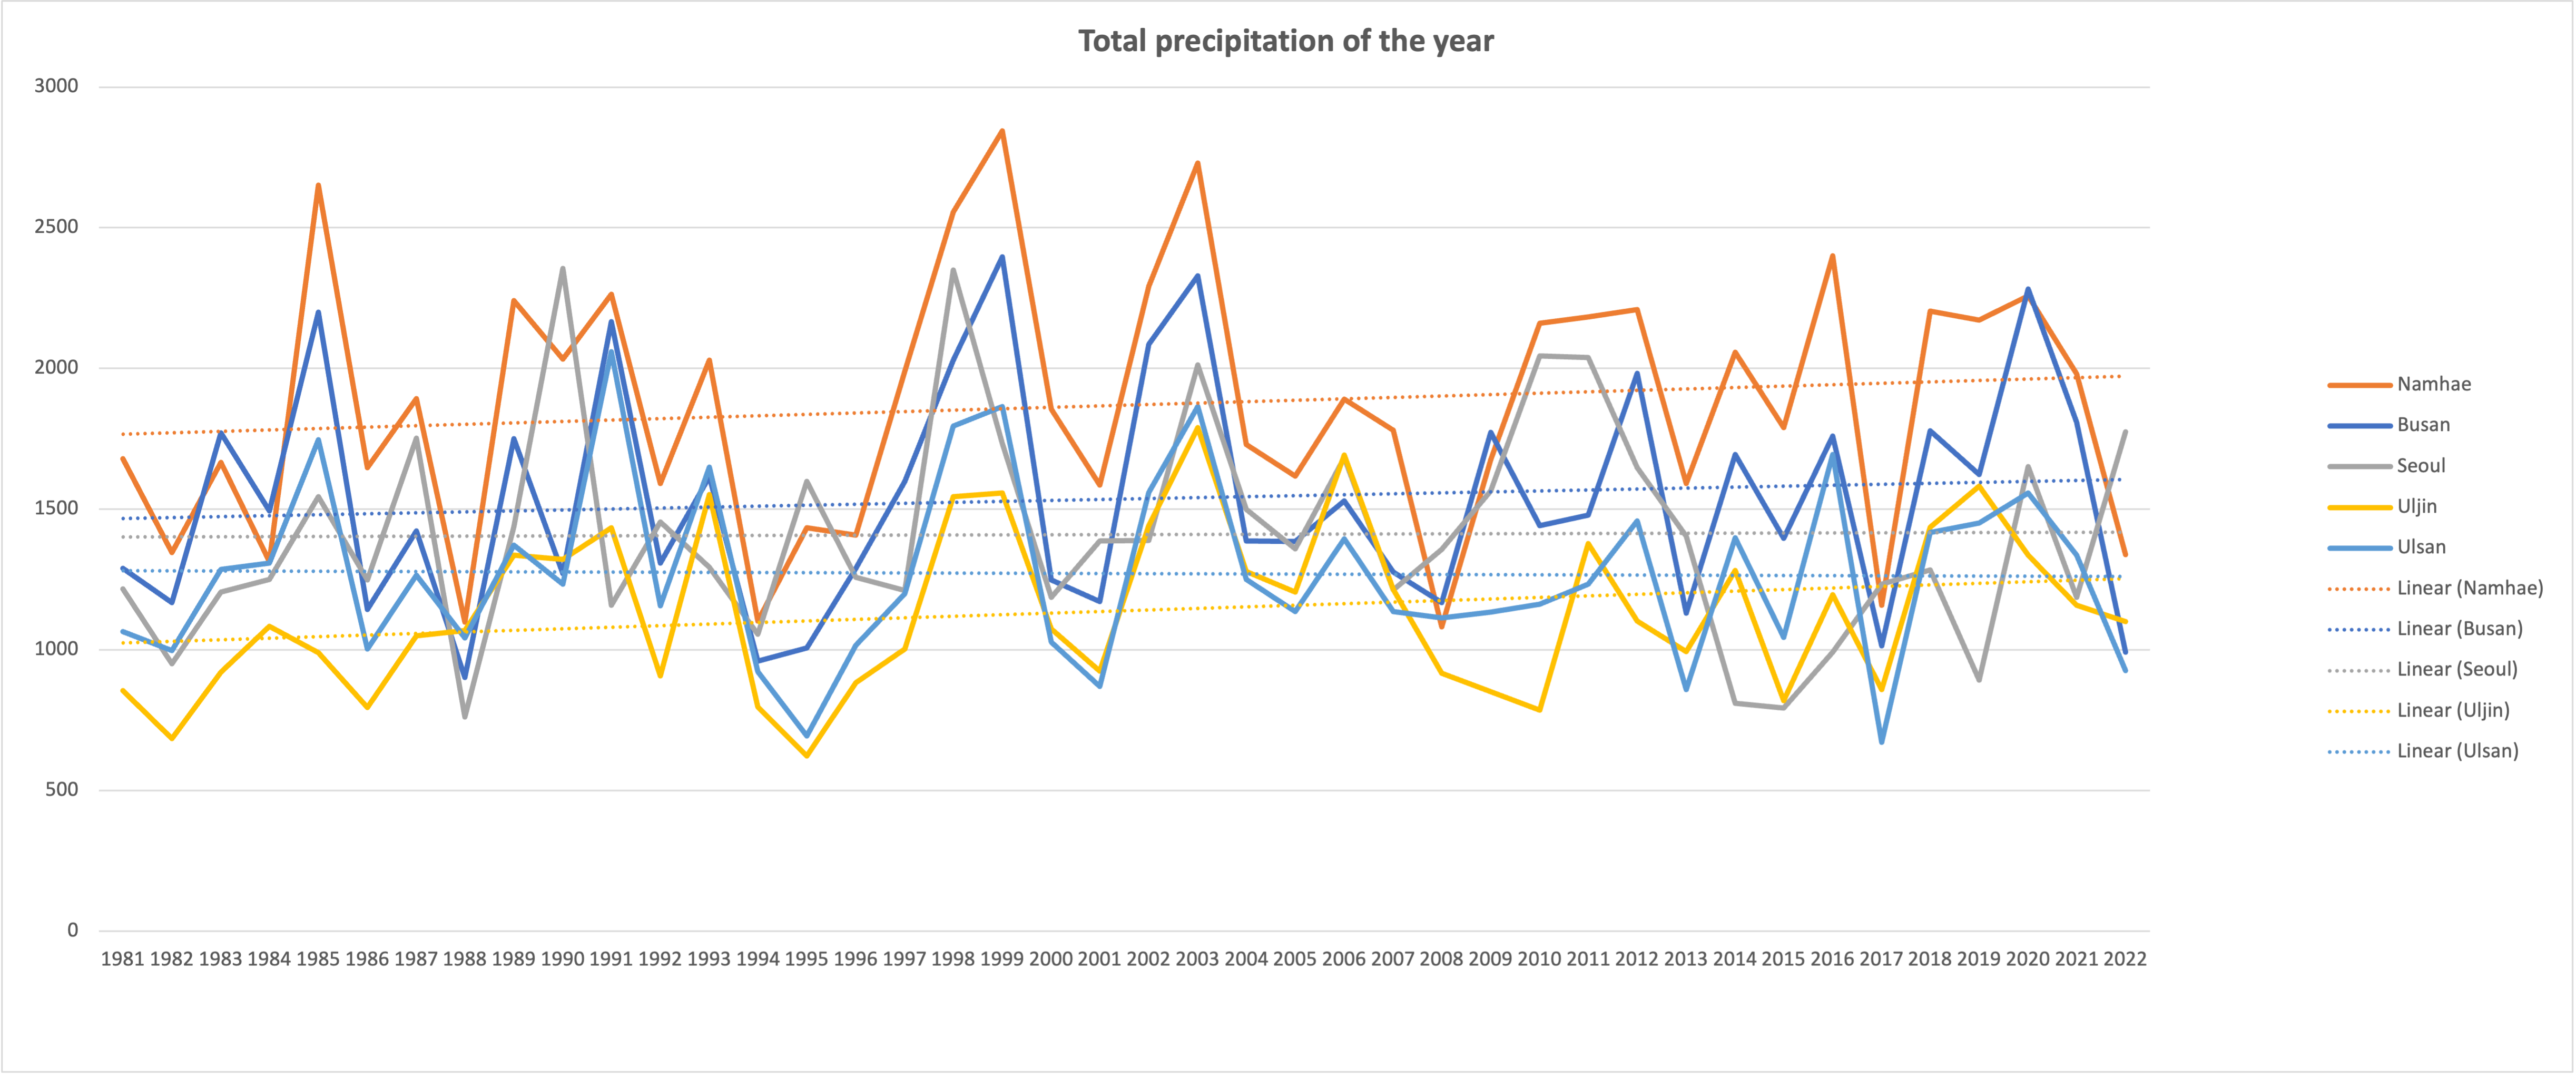 42년간 분석한 지역별 연 강수량으로 서울, 남해, 울진, 부산에서 연 강수량 증가 추세를 보인다. 데이터 출처 : KMA; 그린피스 리서치 유닛 분석